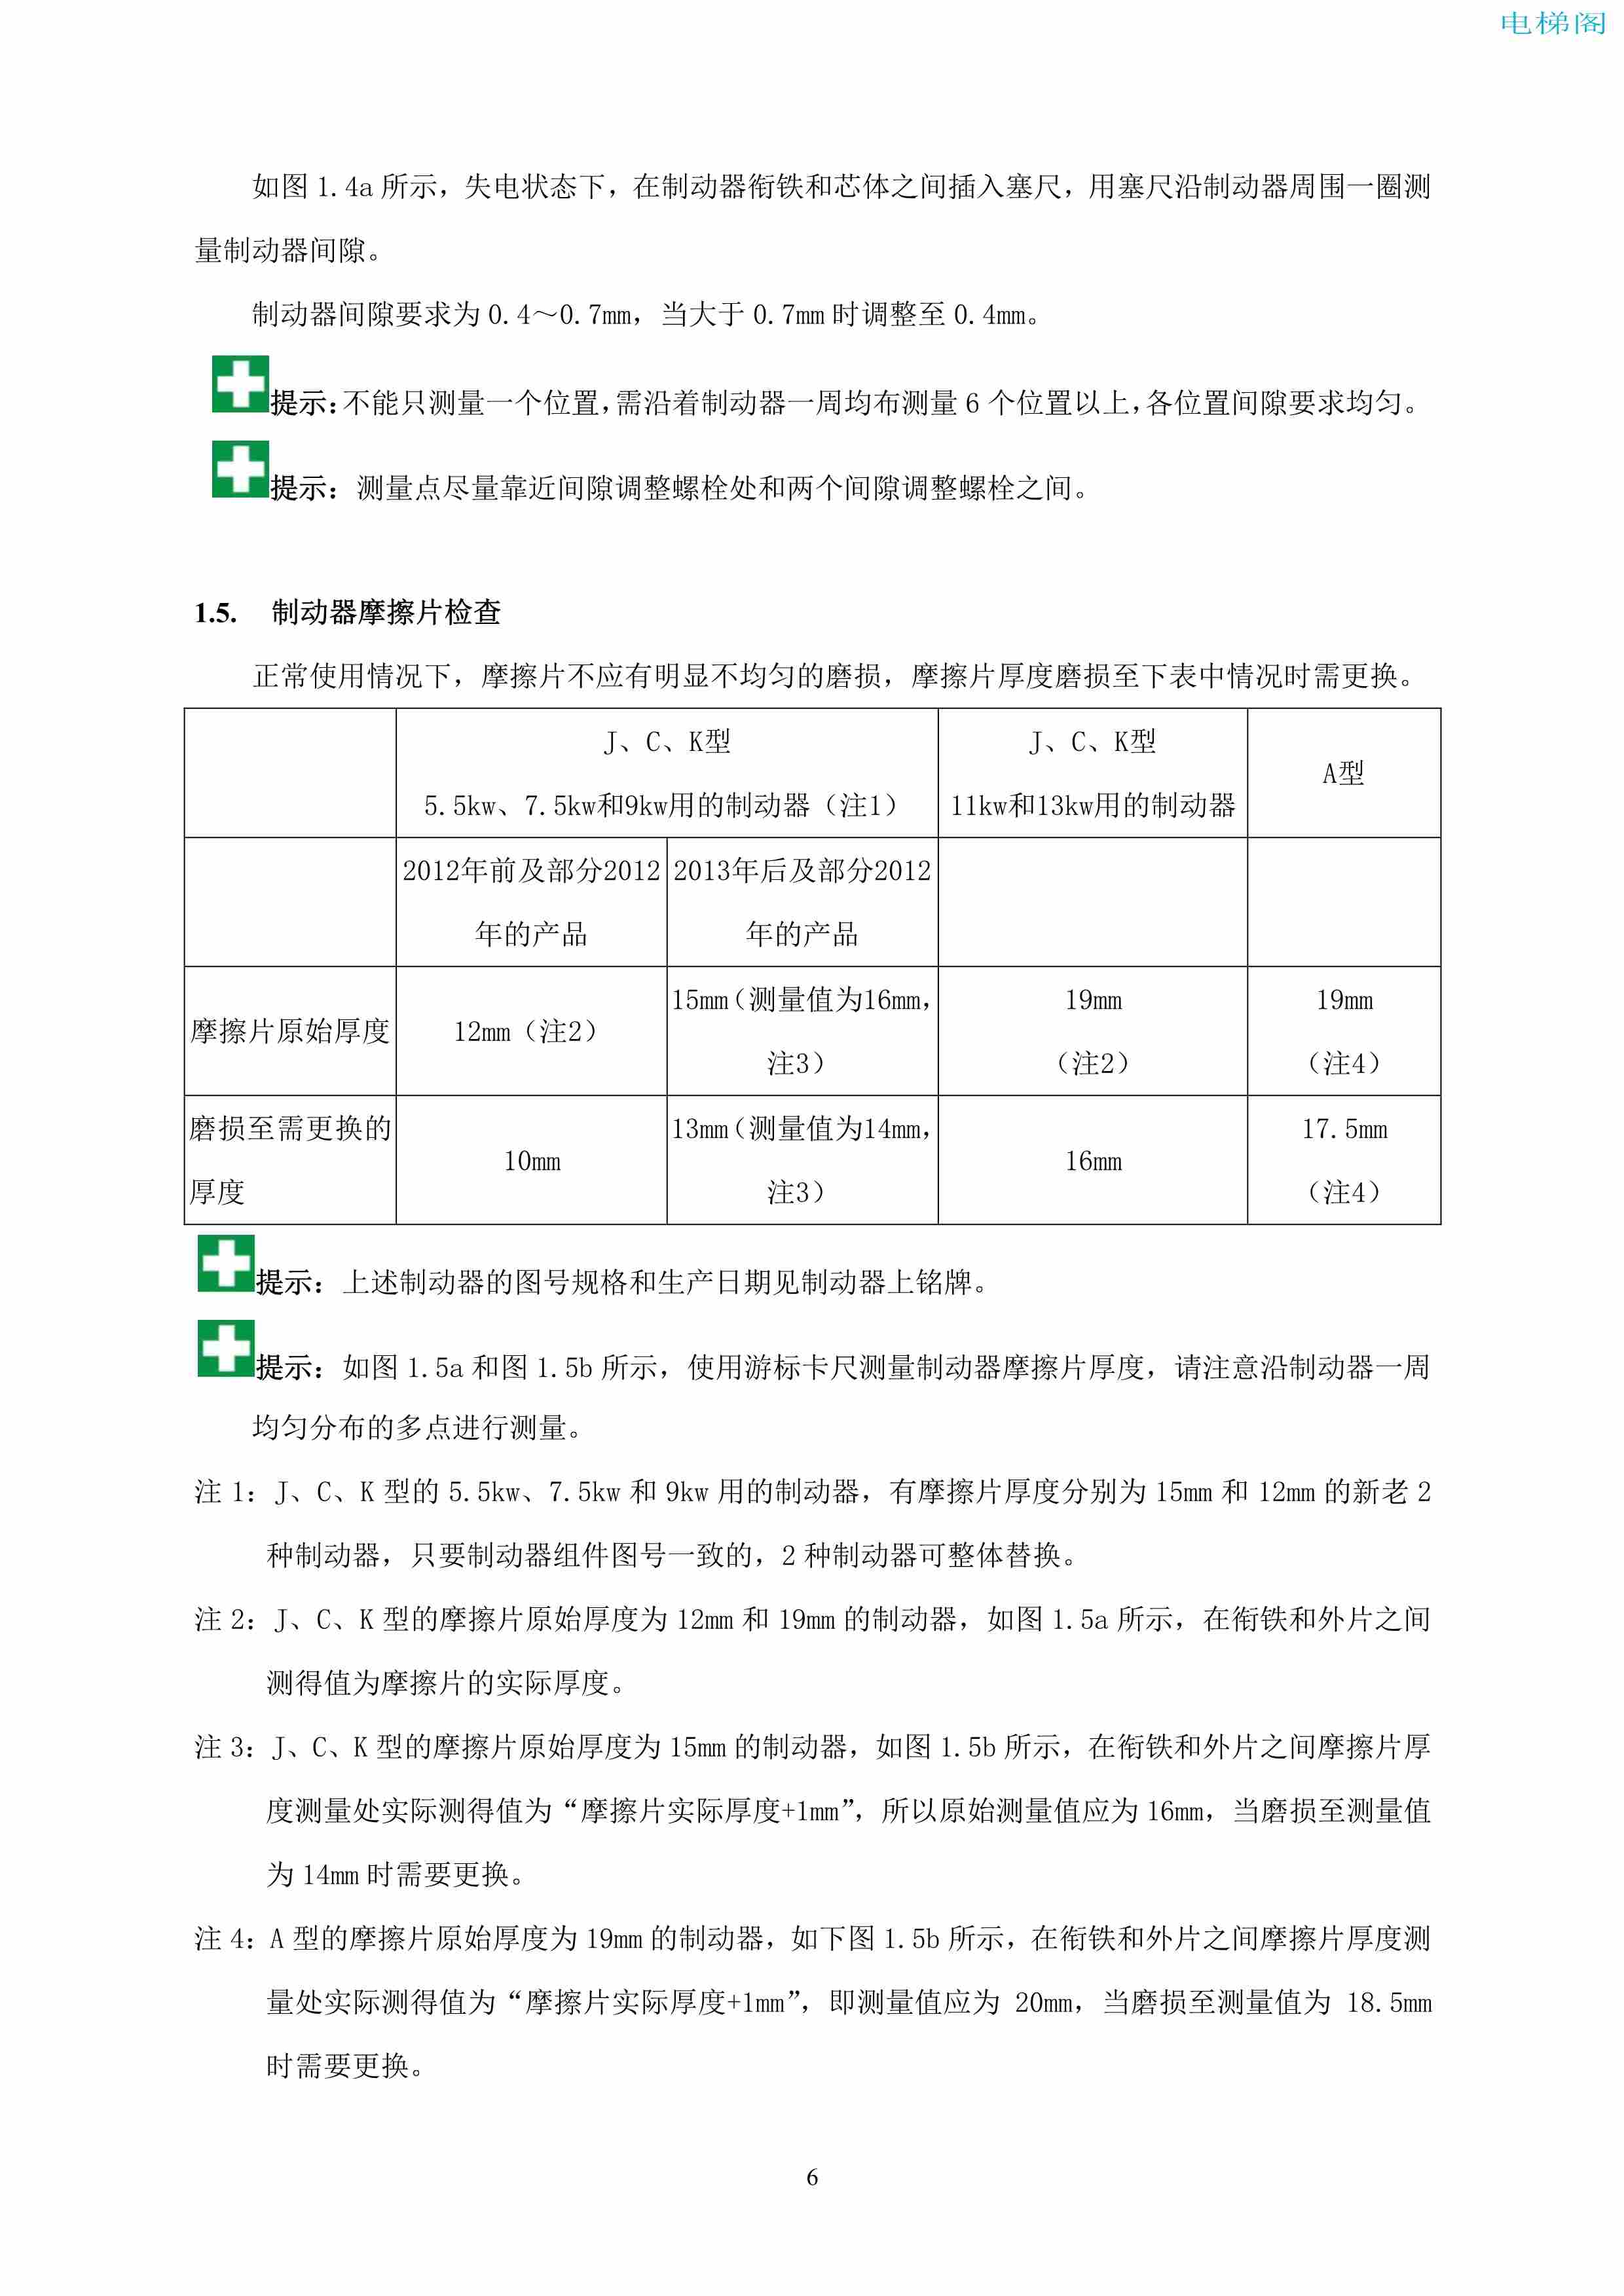 上海三菱电梯有限公司自动扶梯制动器维护作业要领汇编_7.jpg